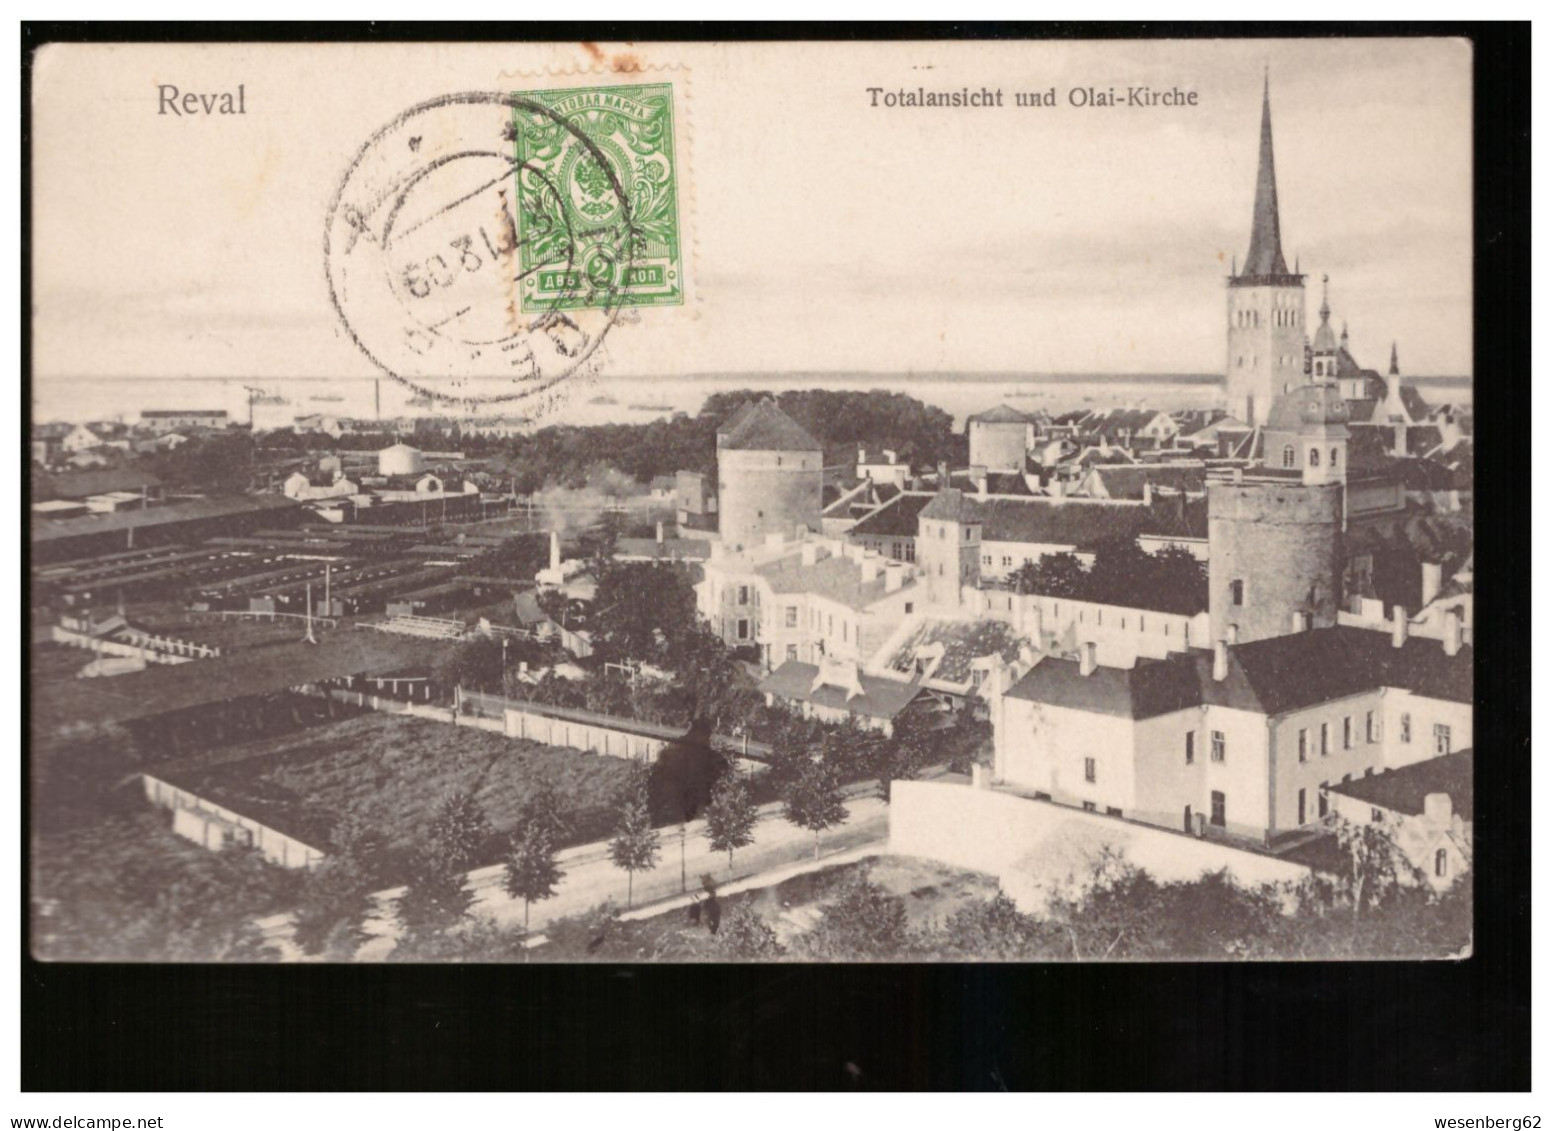 Reval/ Tallinn Totalansicht Und Olai- Kirche 1909 - Estonia